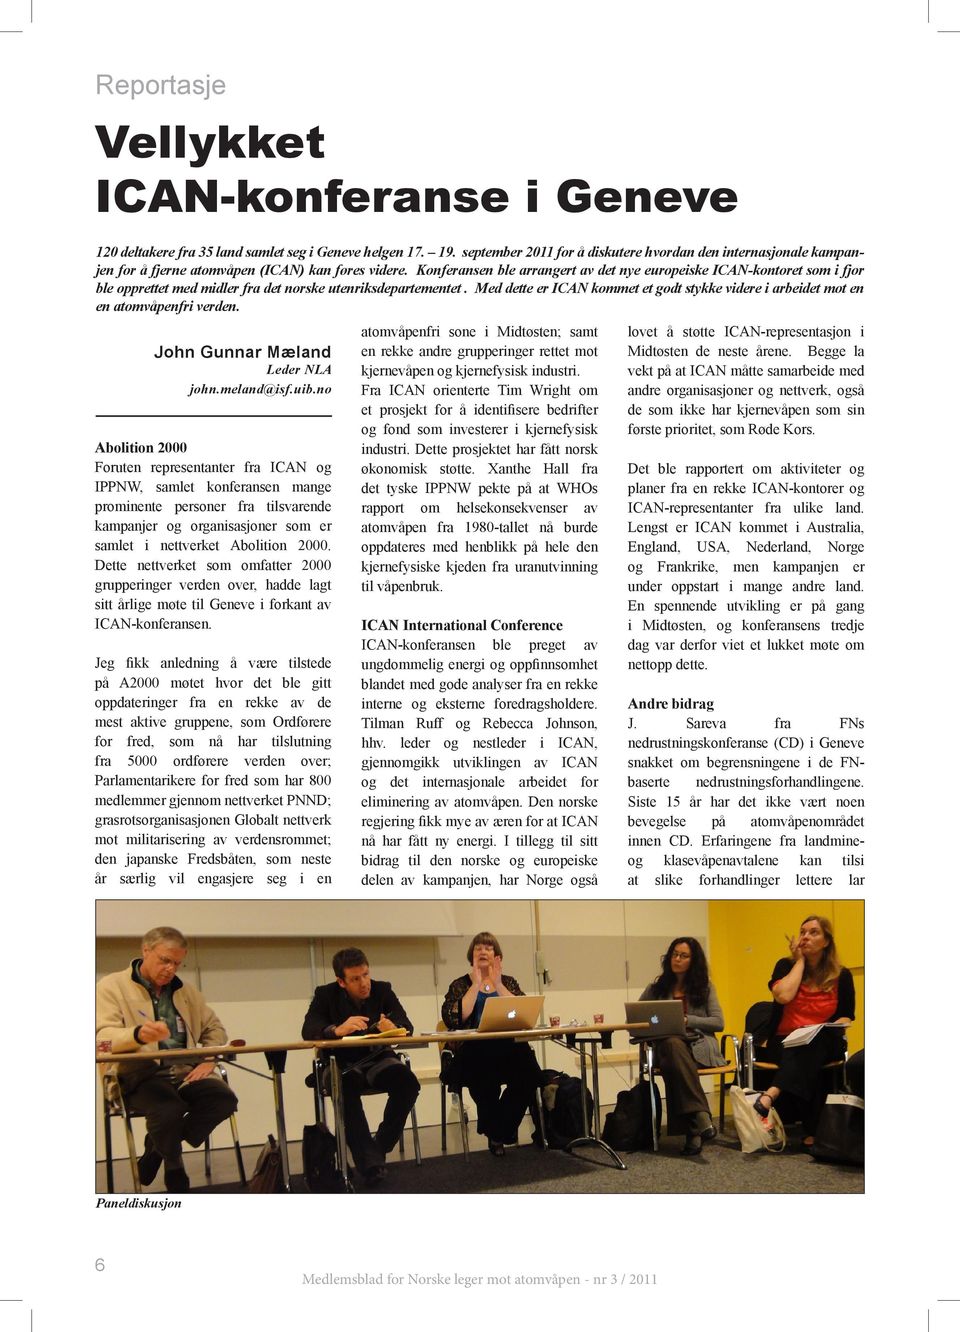 Konferansen ble arrangert av det nye europeiske ICAN-kontoret som i fjor ble opprettet med midler fra det norske utenriksdepartementet.